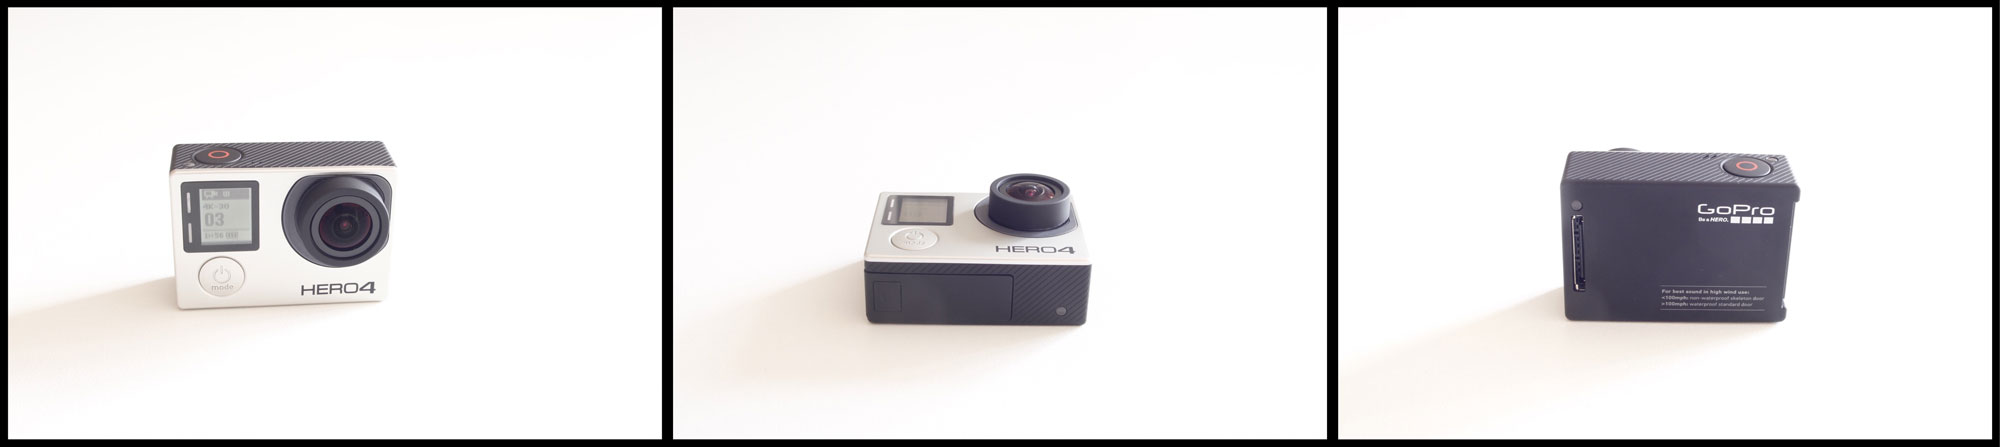 La caméra d'action GoPro Hero4 Black, 2015, Ph. Moctar KANE.